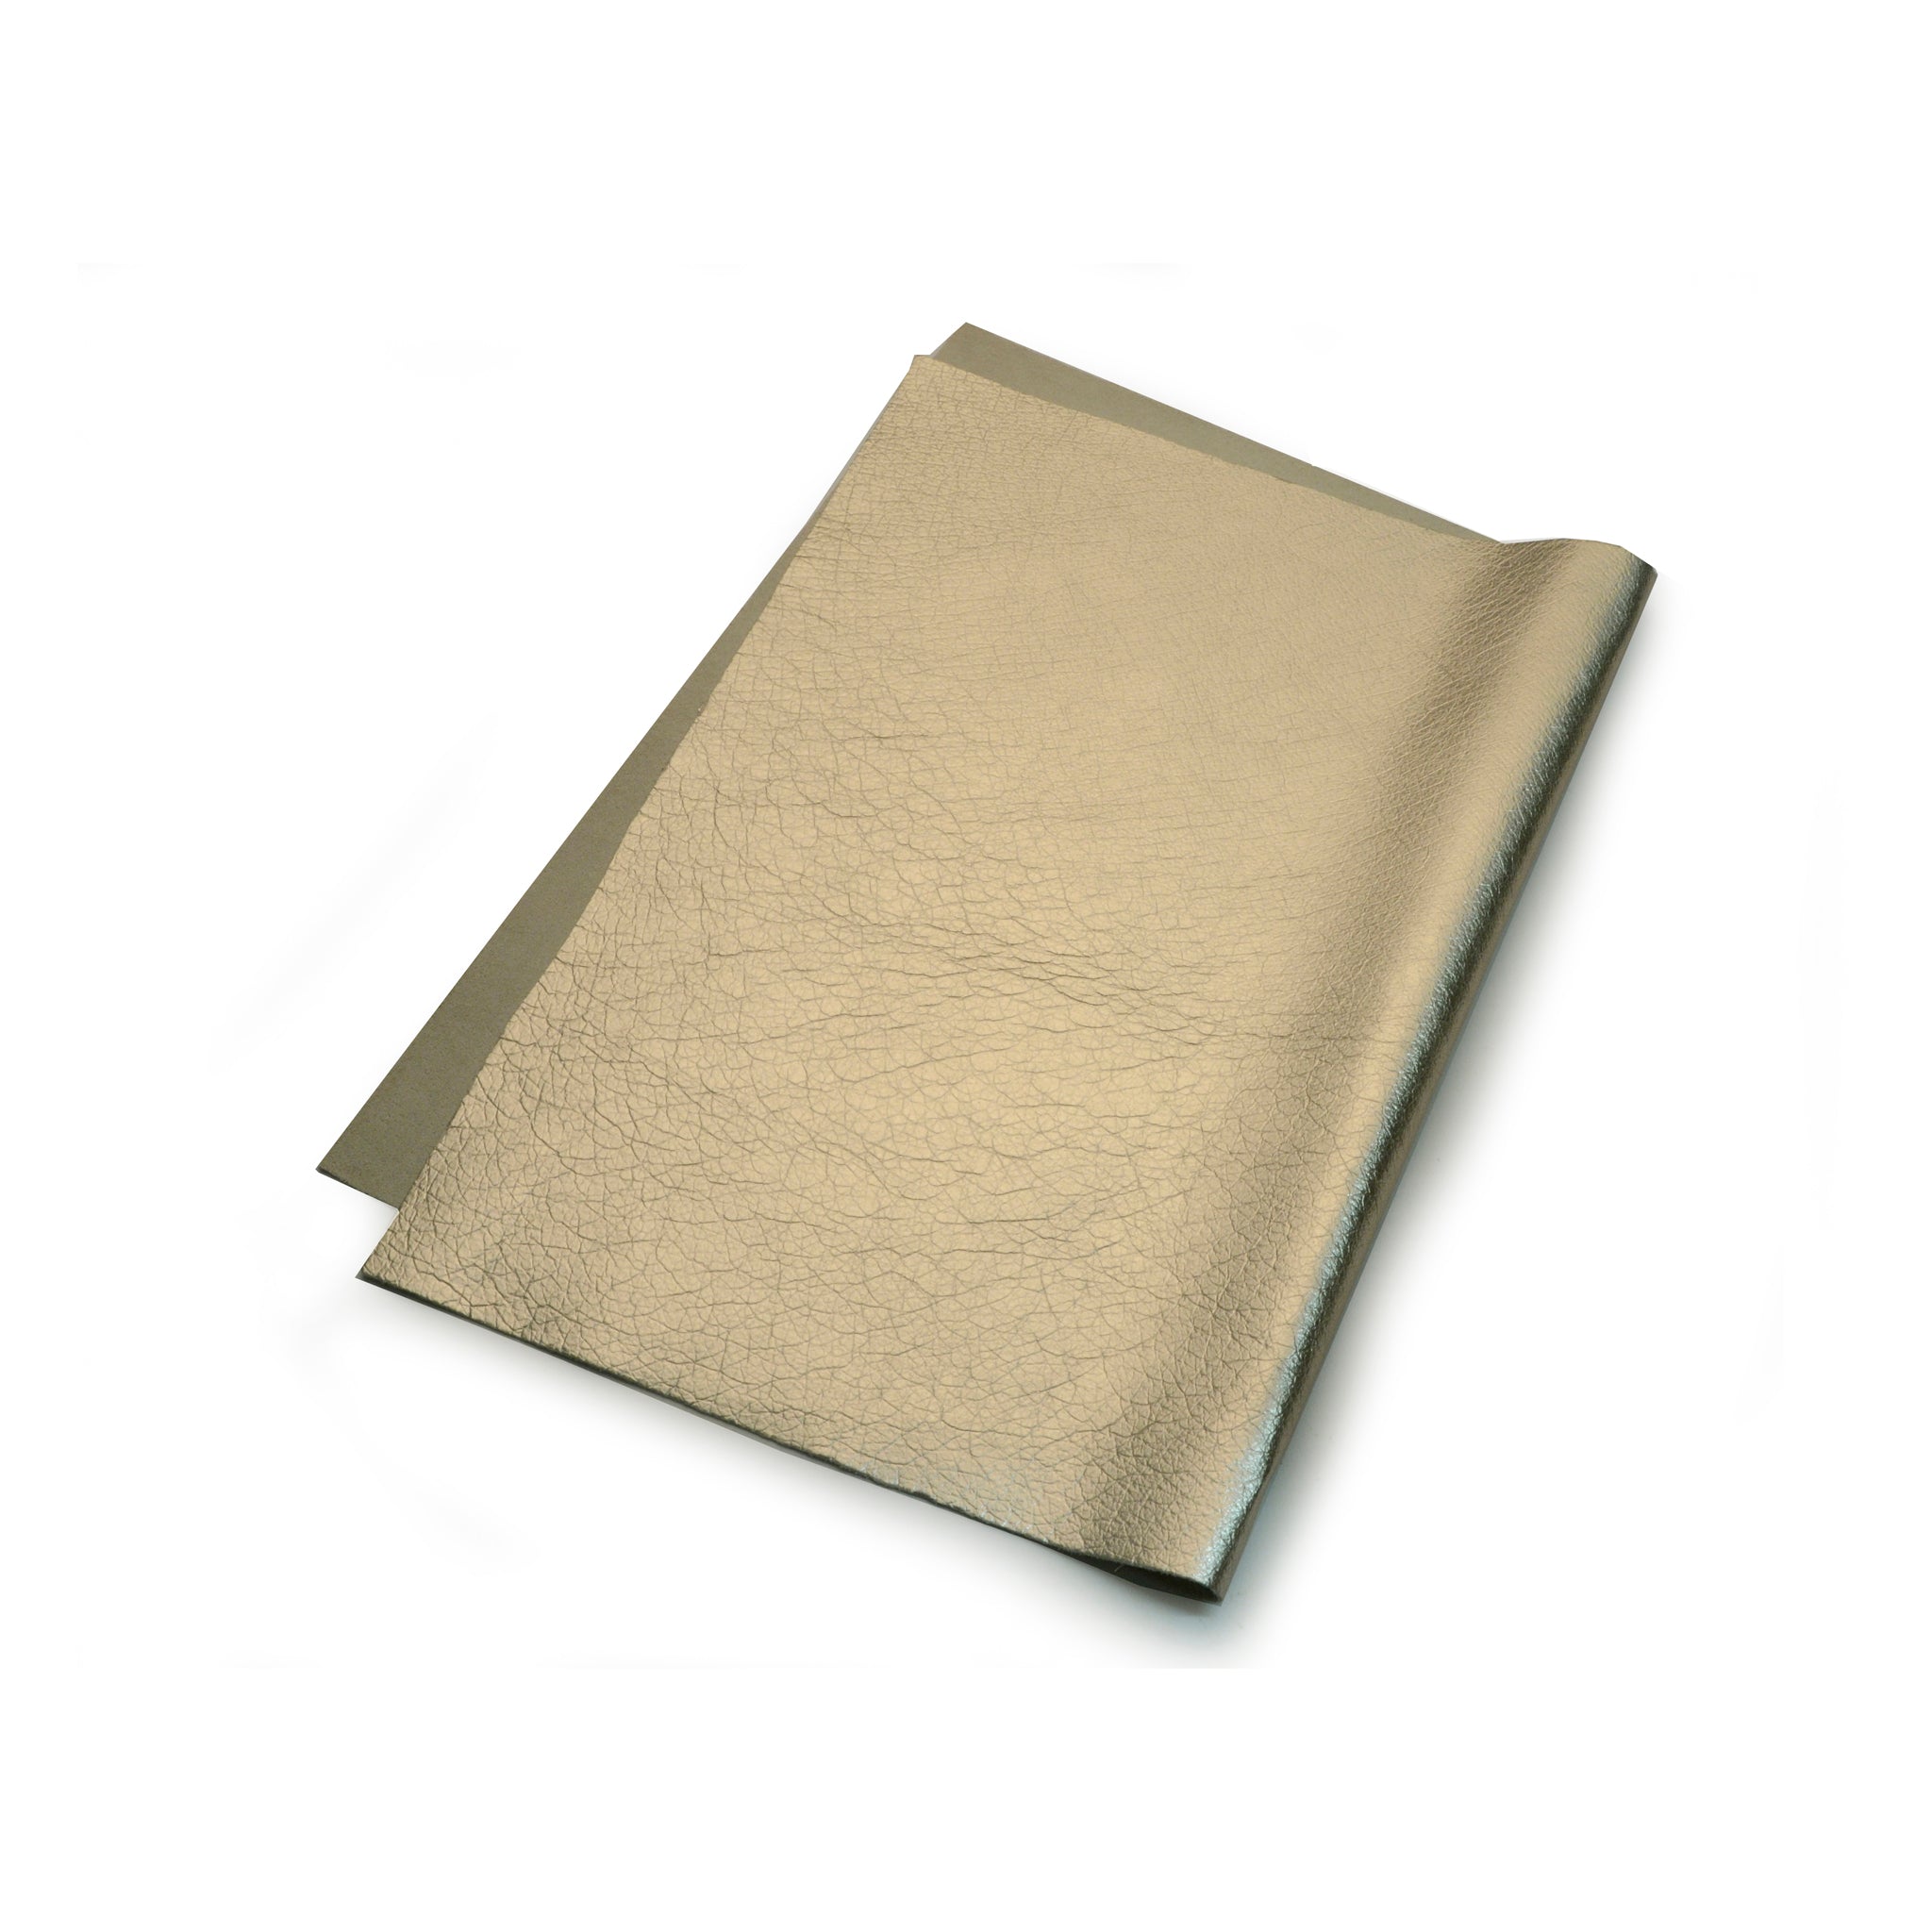 White Gold Metallic Foil Leather